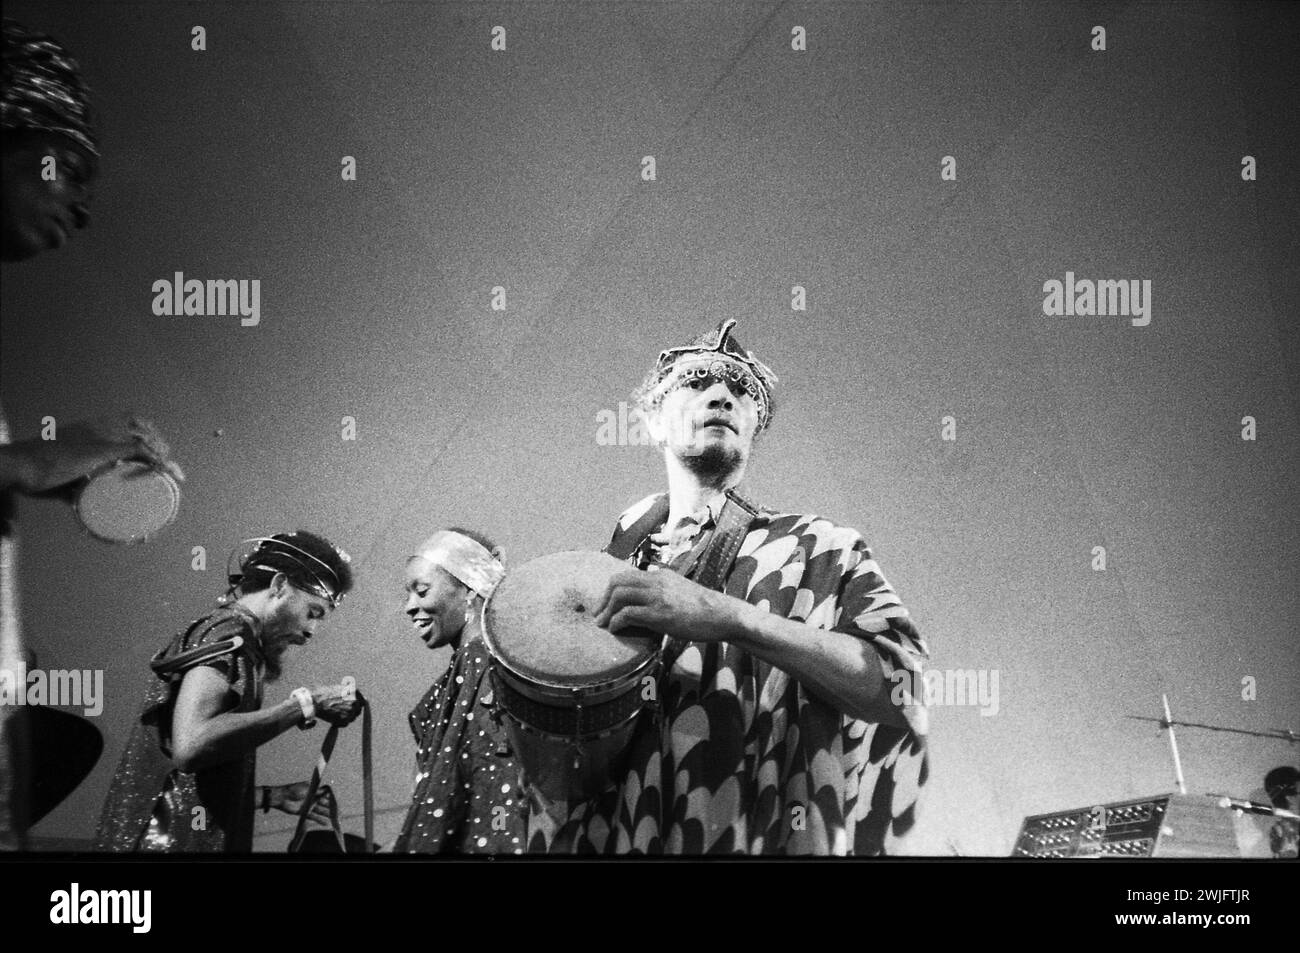 Philippe Gras / Le Pictorium - Sun Ra auf der Bühne. - 21/07/2013 - Frankreich / Alps Maritimes / Saint Paul de Vence - Sun Ra Arkestra Konzert in der Fondation Maeght, Saint Paul de Vence, 1970 Stockfoto